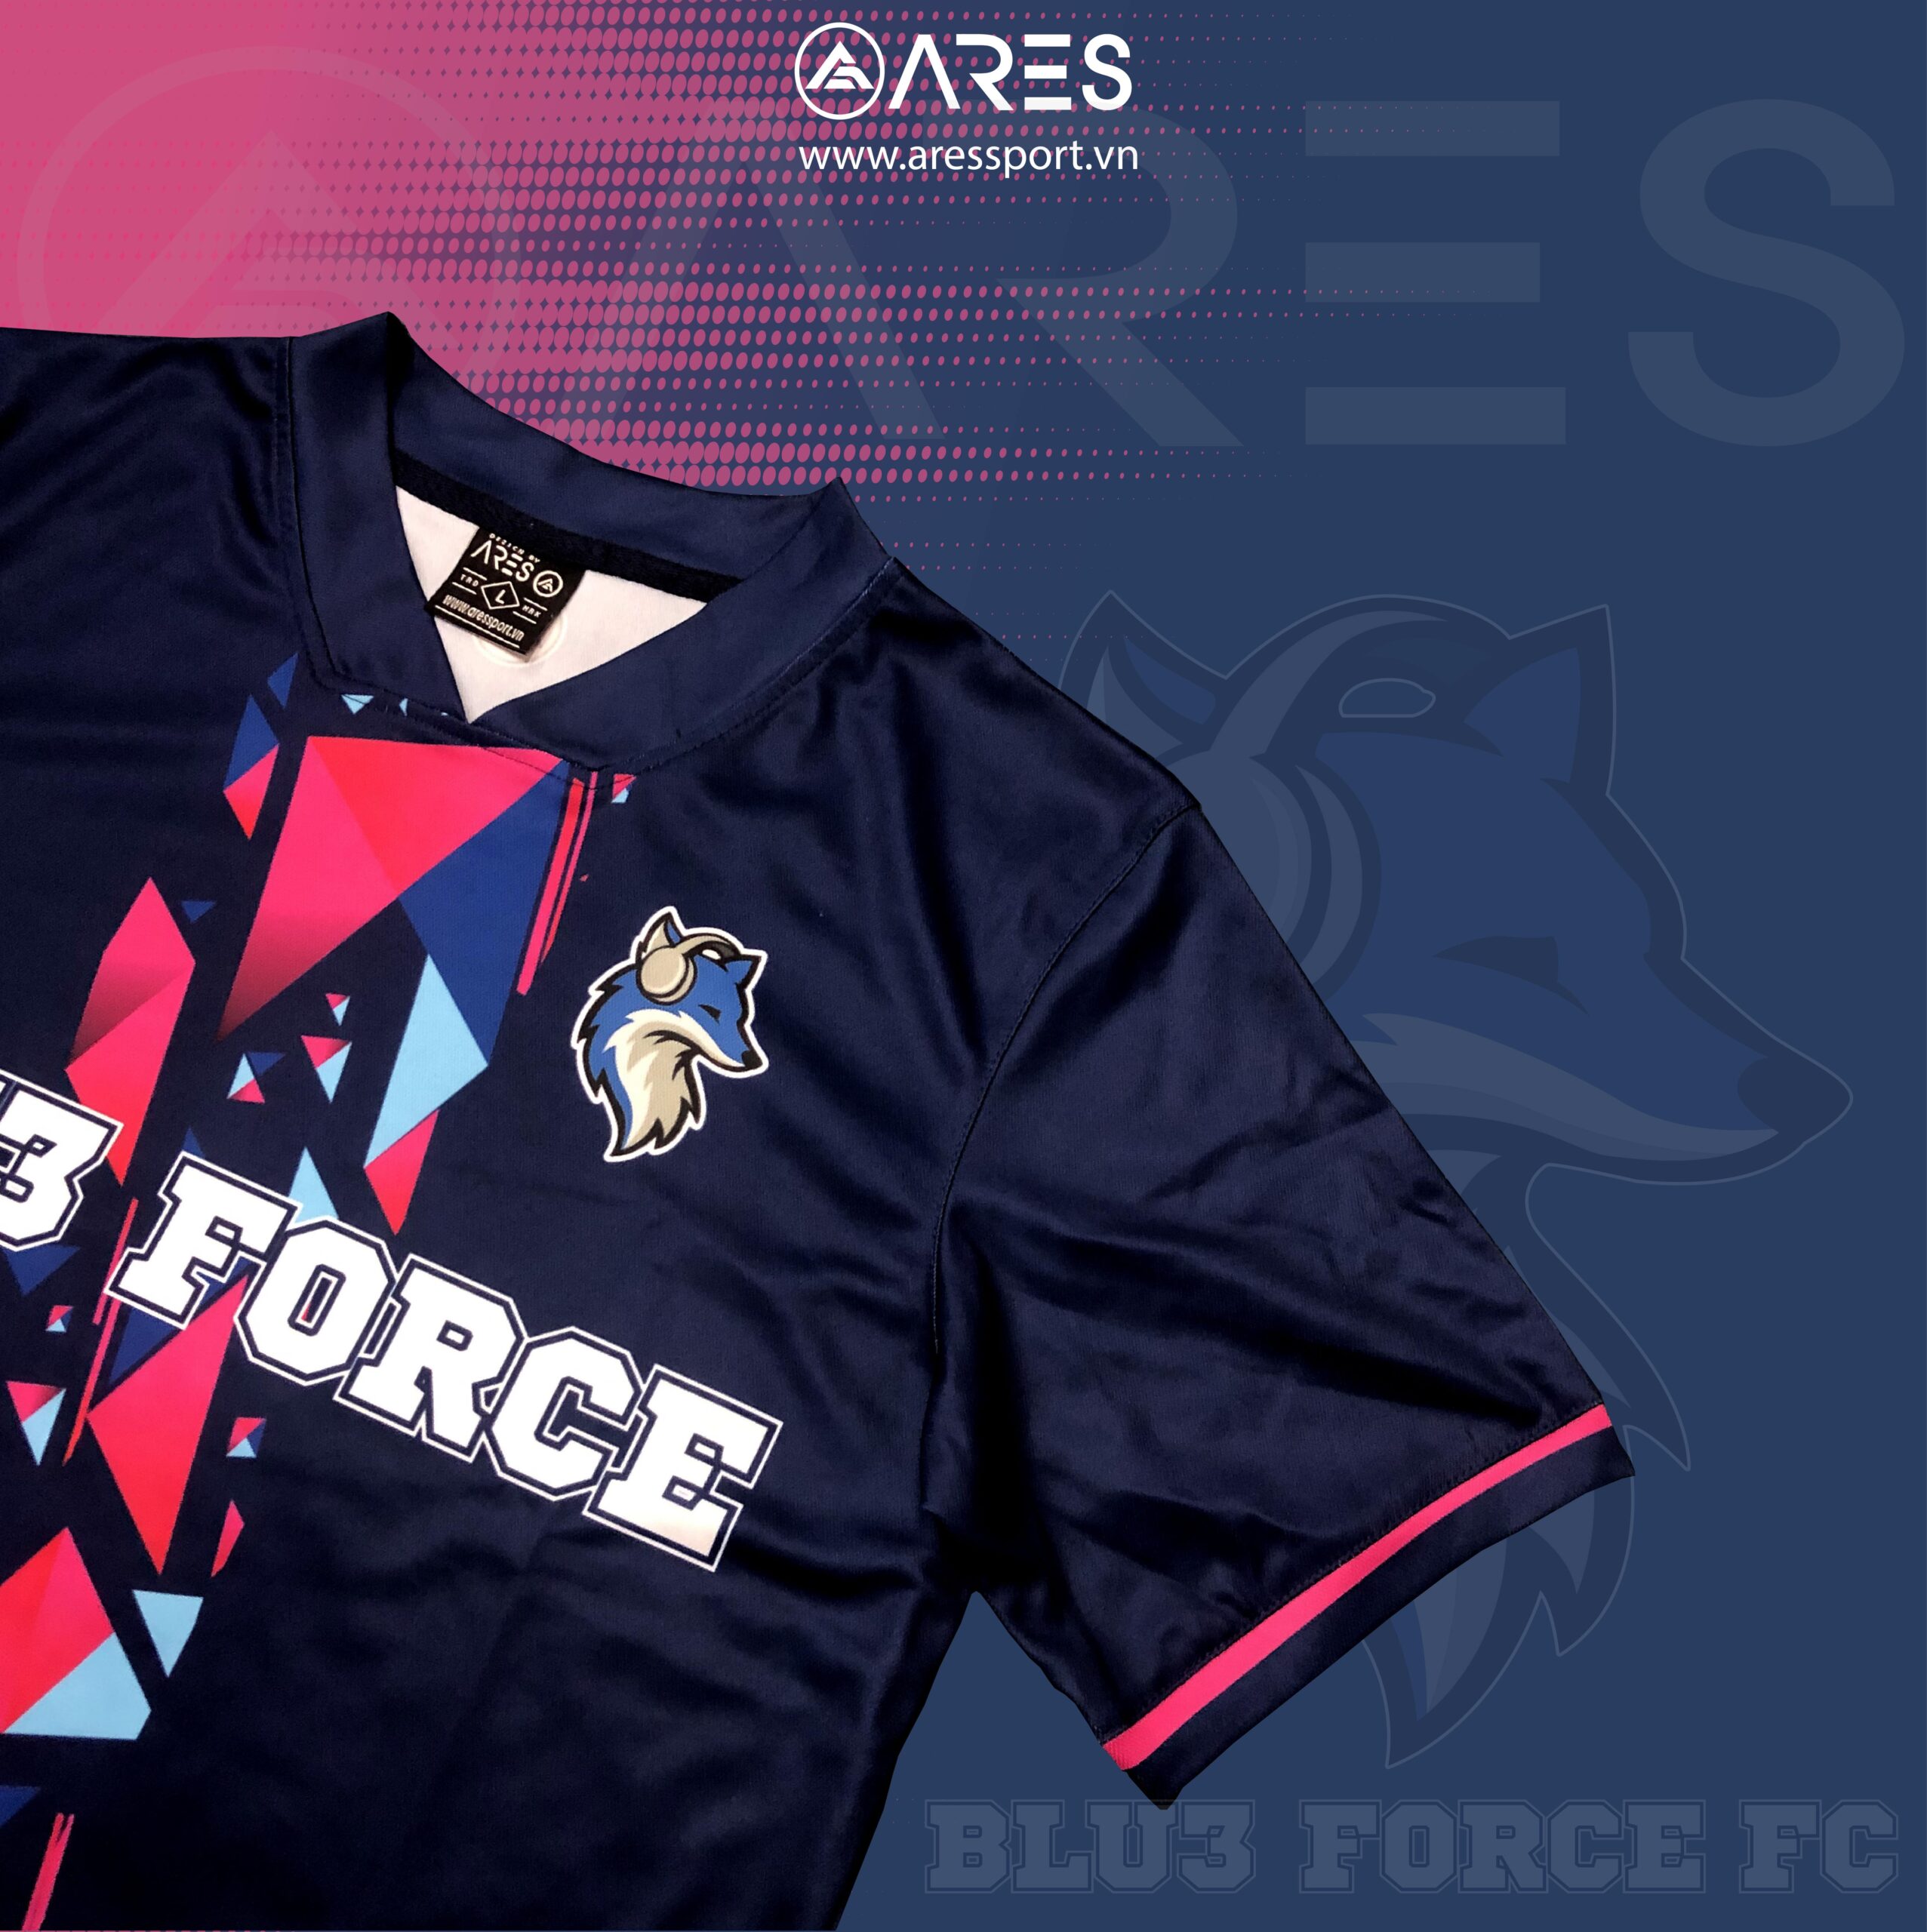 In logo và họa tiết áo đá banh đẹp, sắc nét cho team Blu3 Force